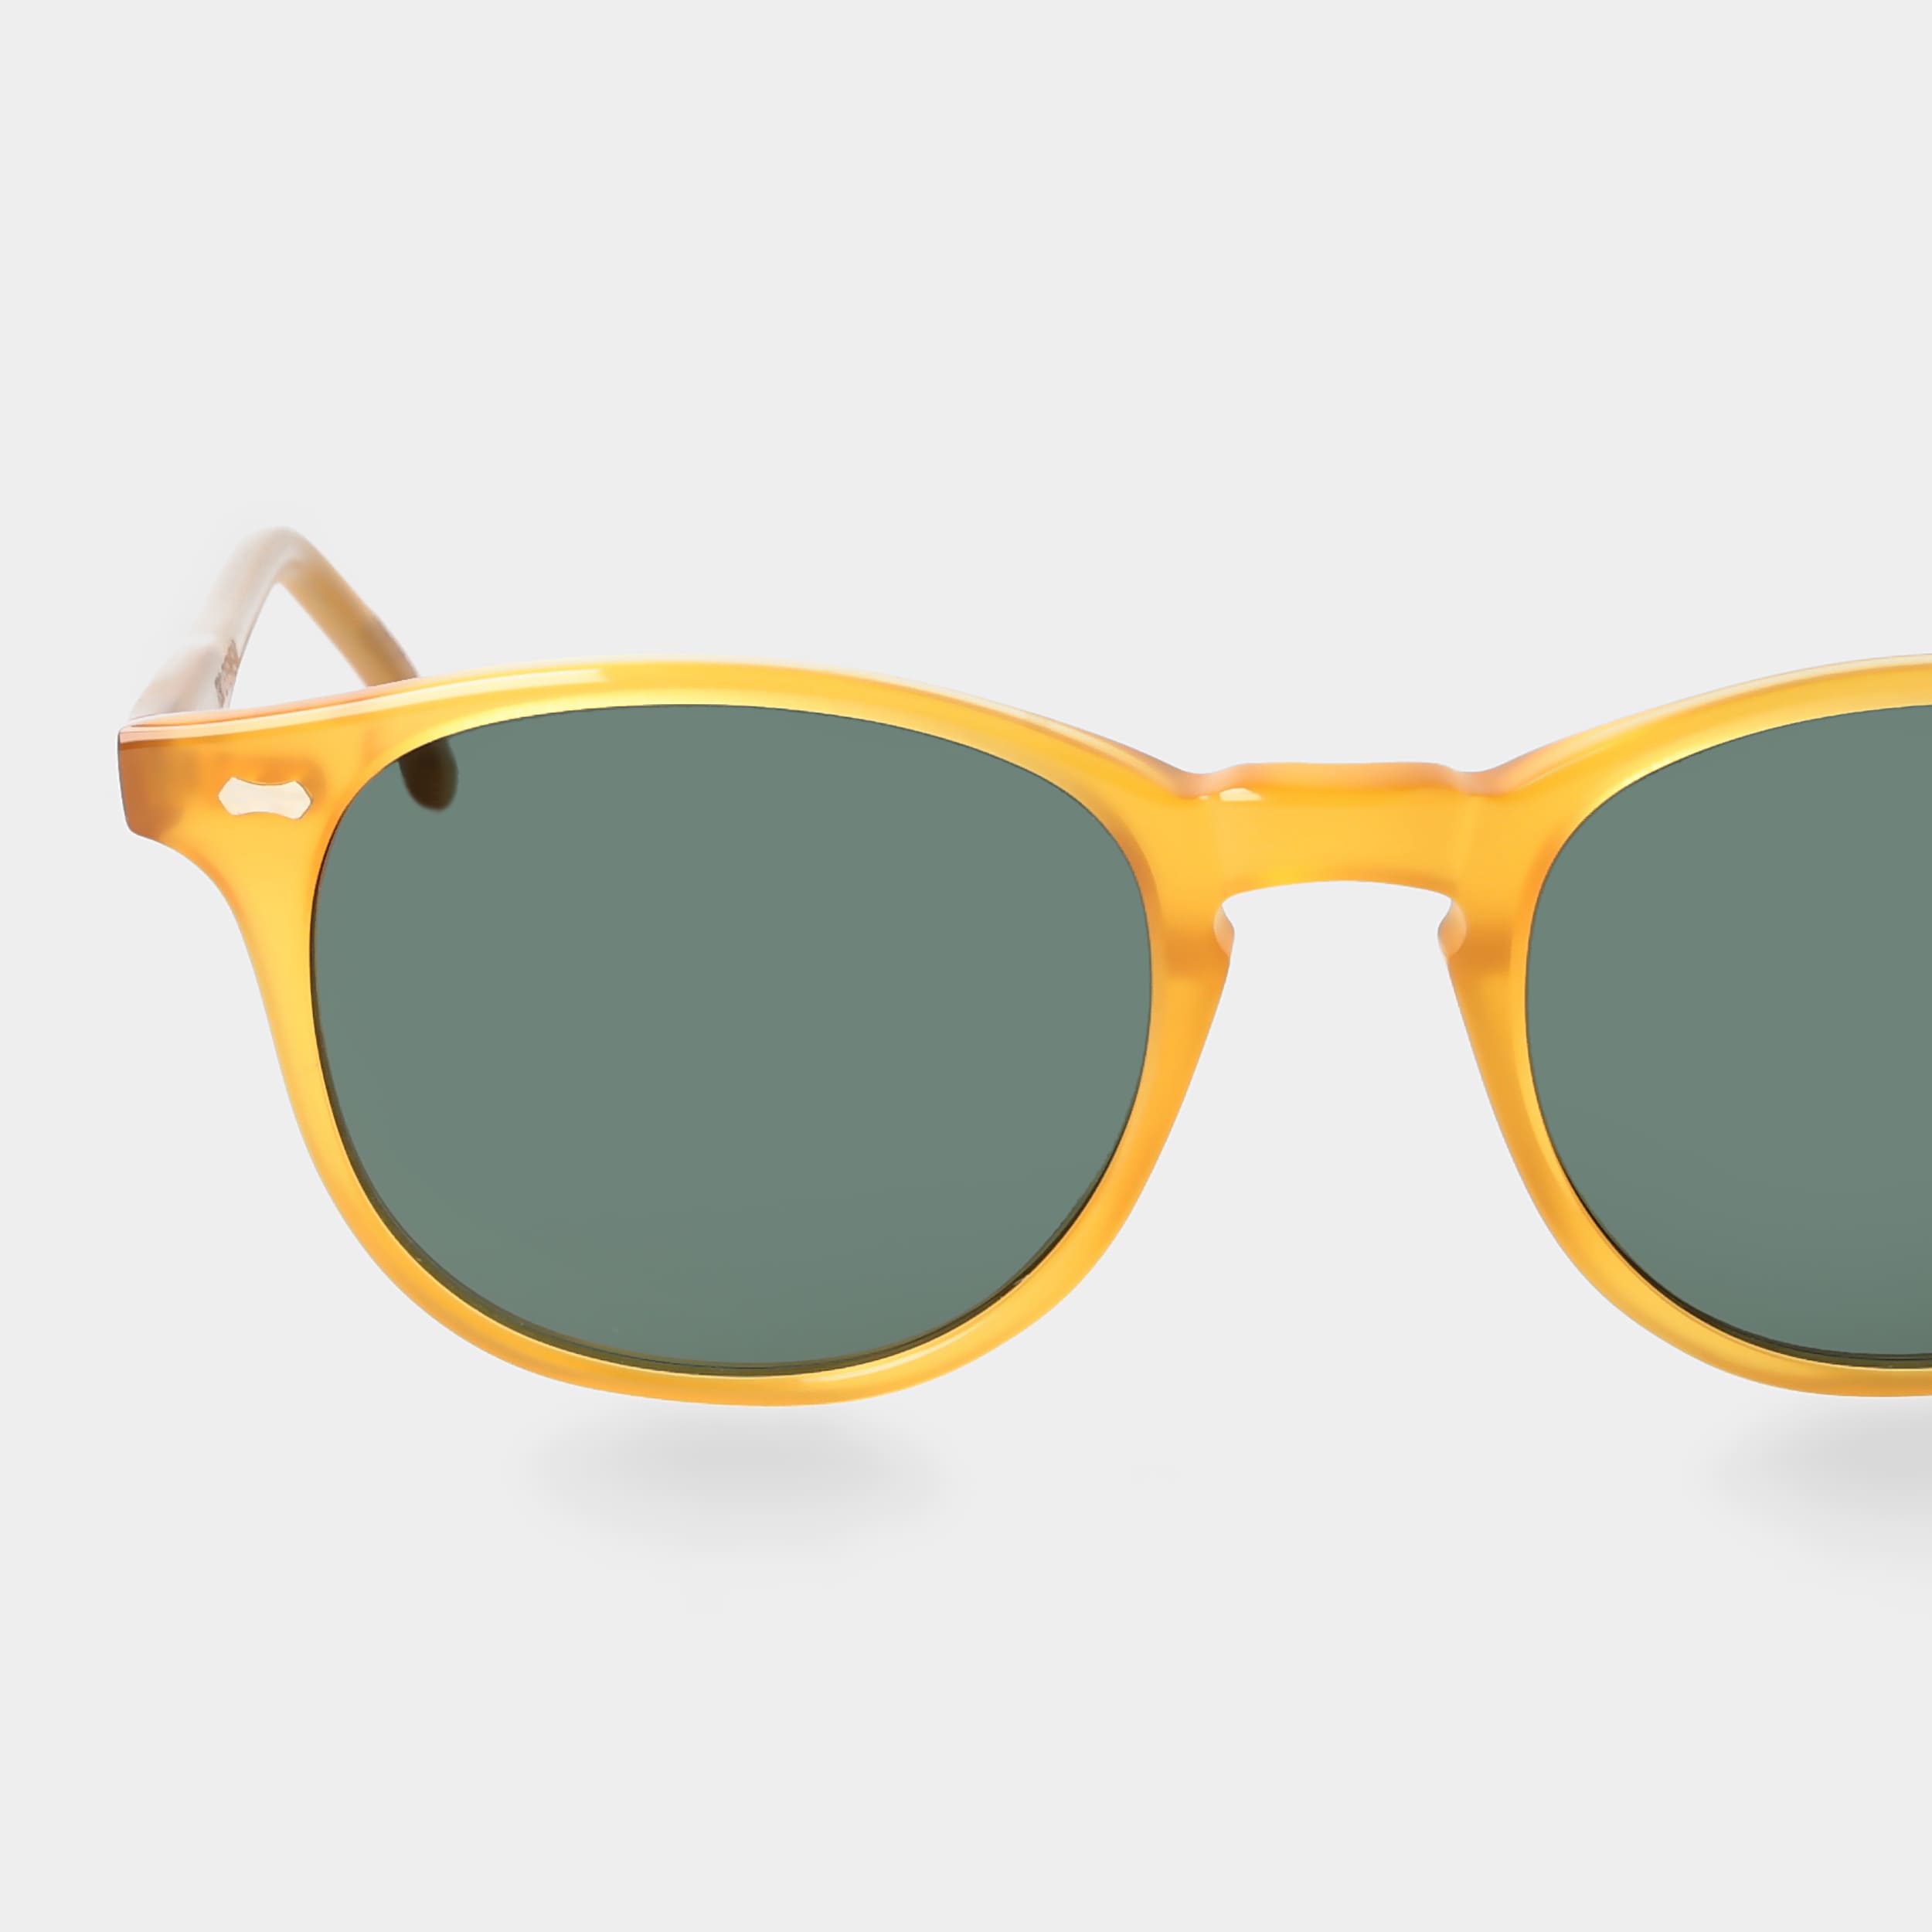 sunglasses-shetland-honey-bottle-green-tbd-eyewear-lens